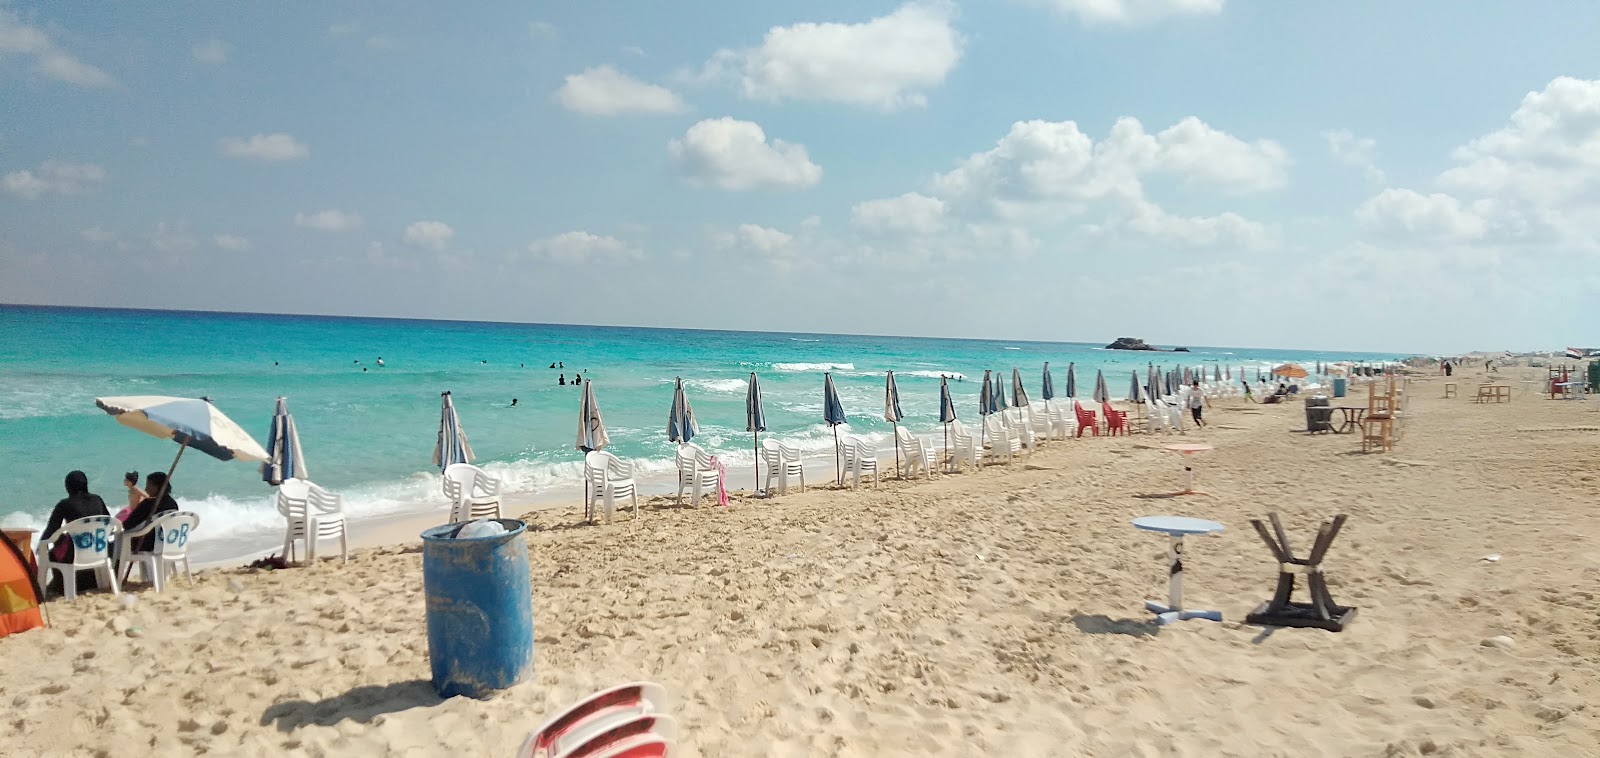 Fotografie cu Matrouh Beach - locul popular printre cunoscătorii de relaxare